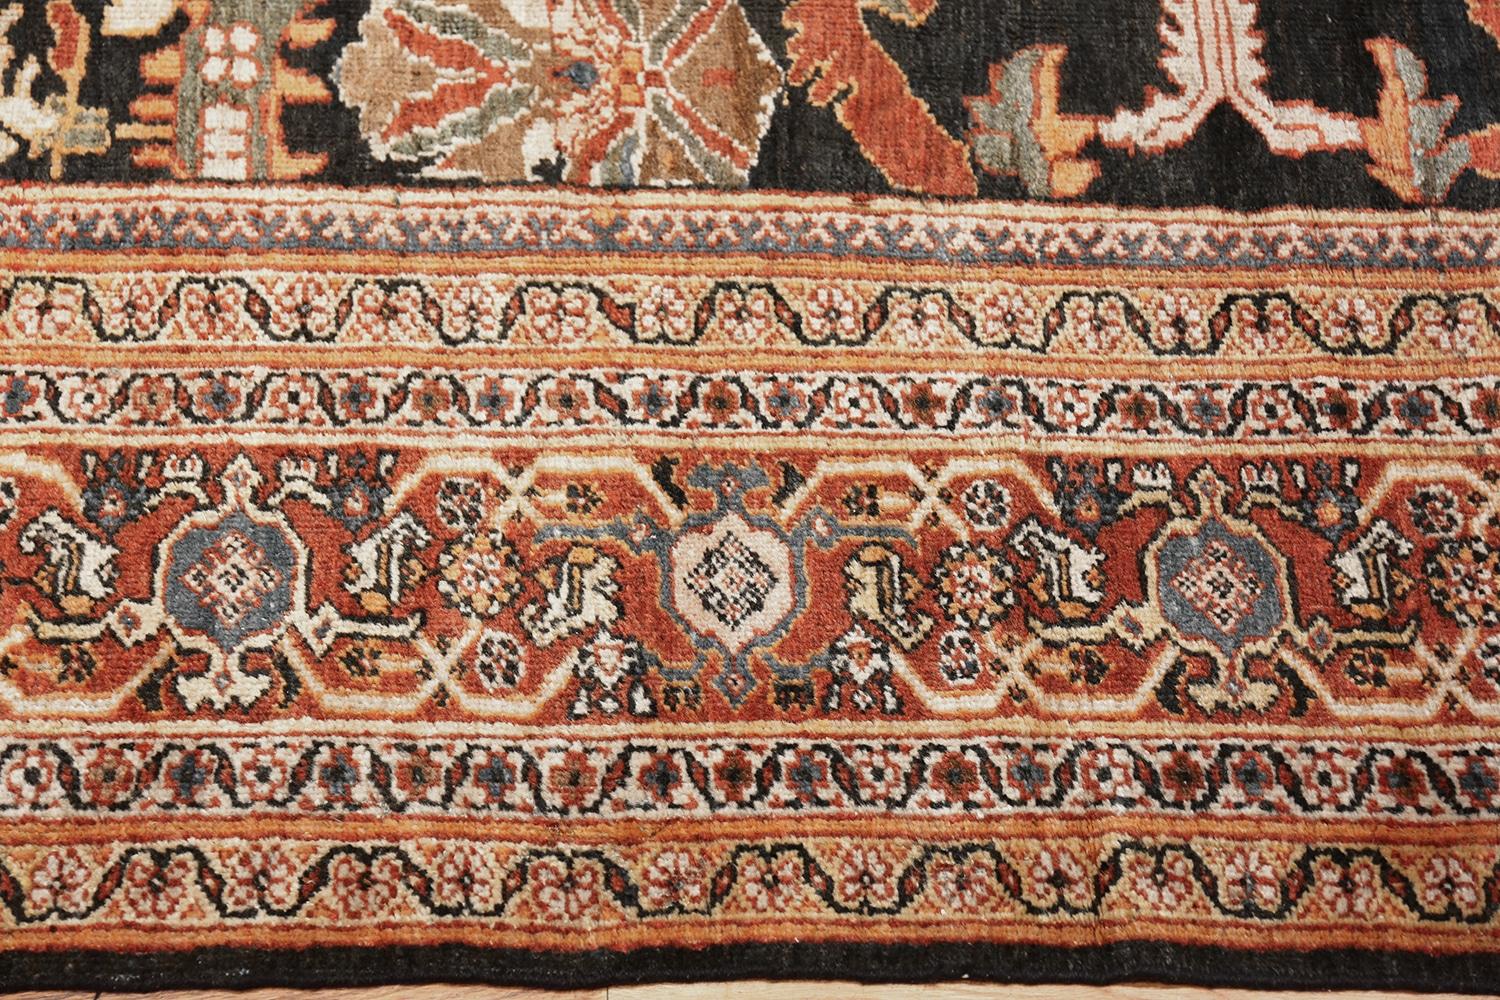 Schöner großer antiker persischer Sultanabad-Teppich, Herkunftsland/Teppichart: antike persische Teppiche, um 1900, Größe: 3,66 m x 5,84 m (12 ft x 19 ft 2 in).